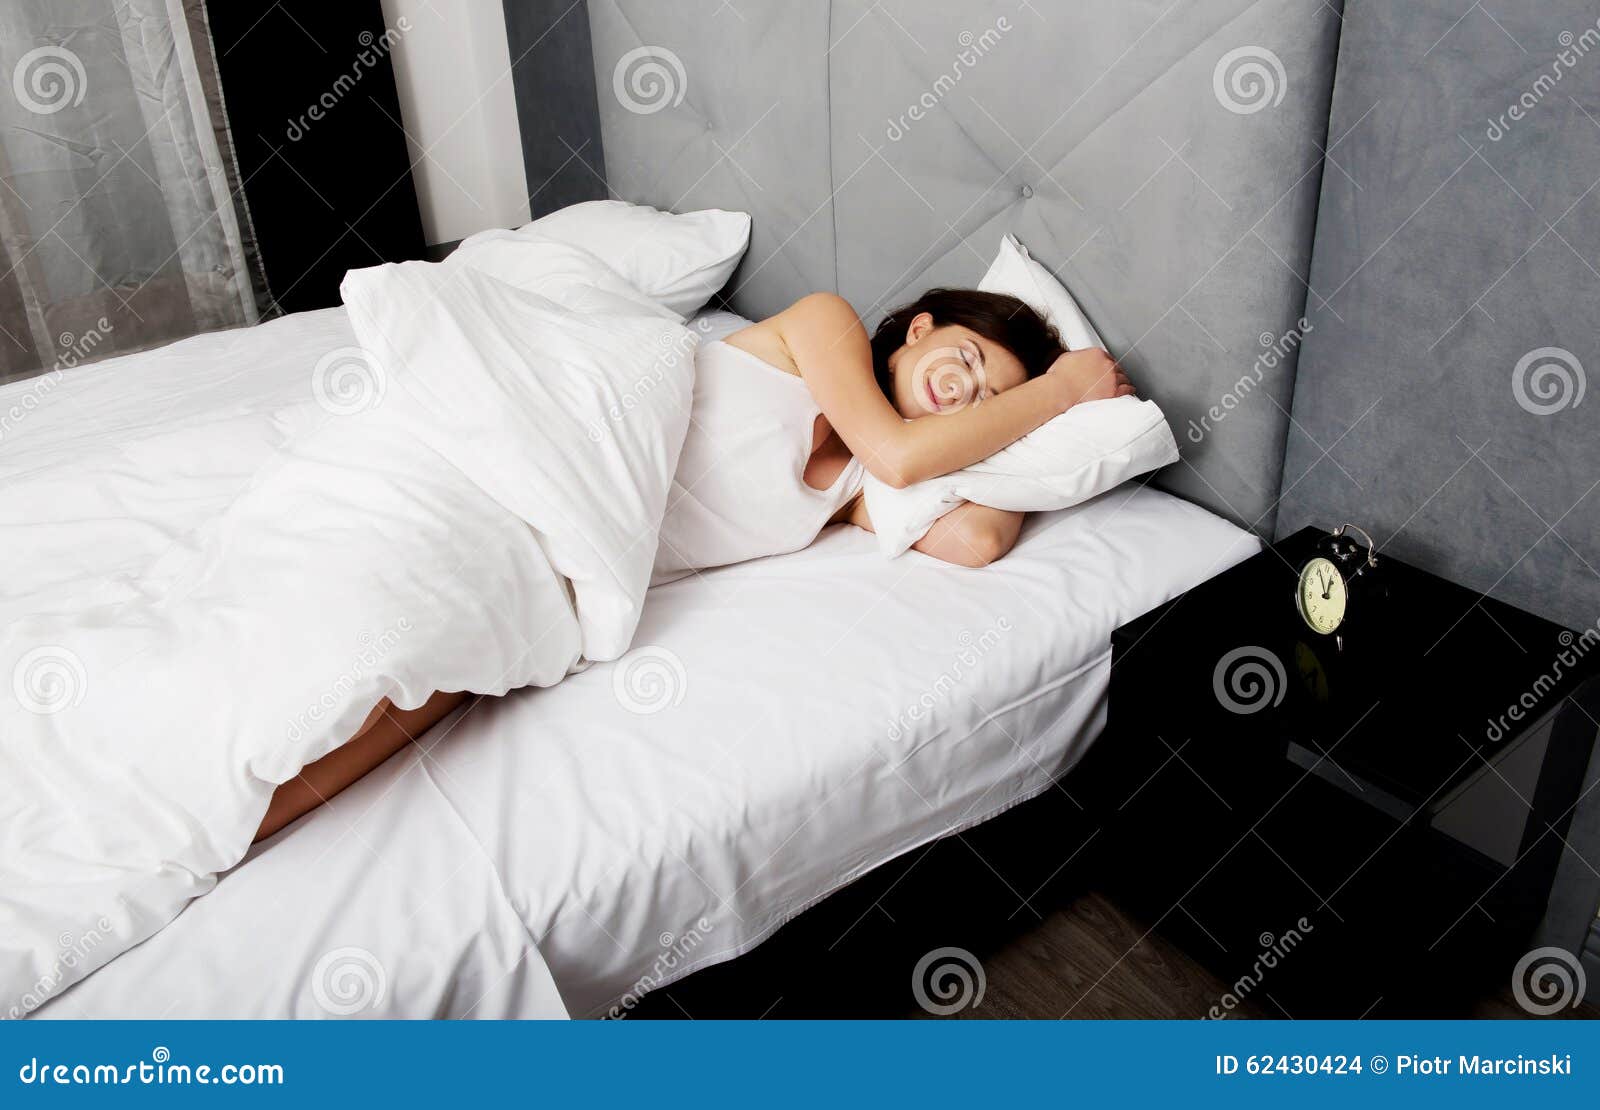 Удовольствие женщины в постели. Молодые женщины в постели. Кровать со спящей девушкой.